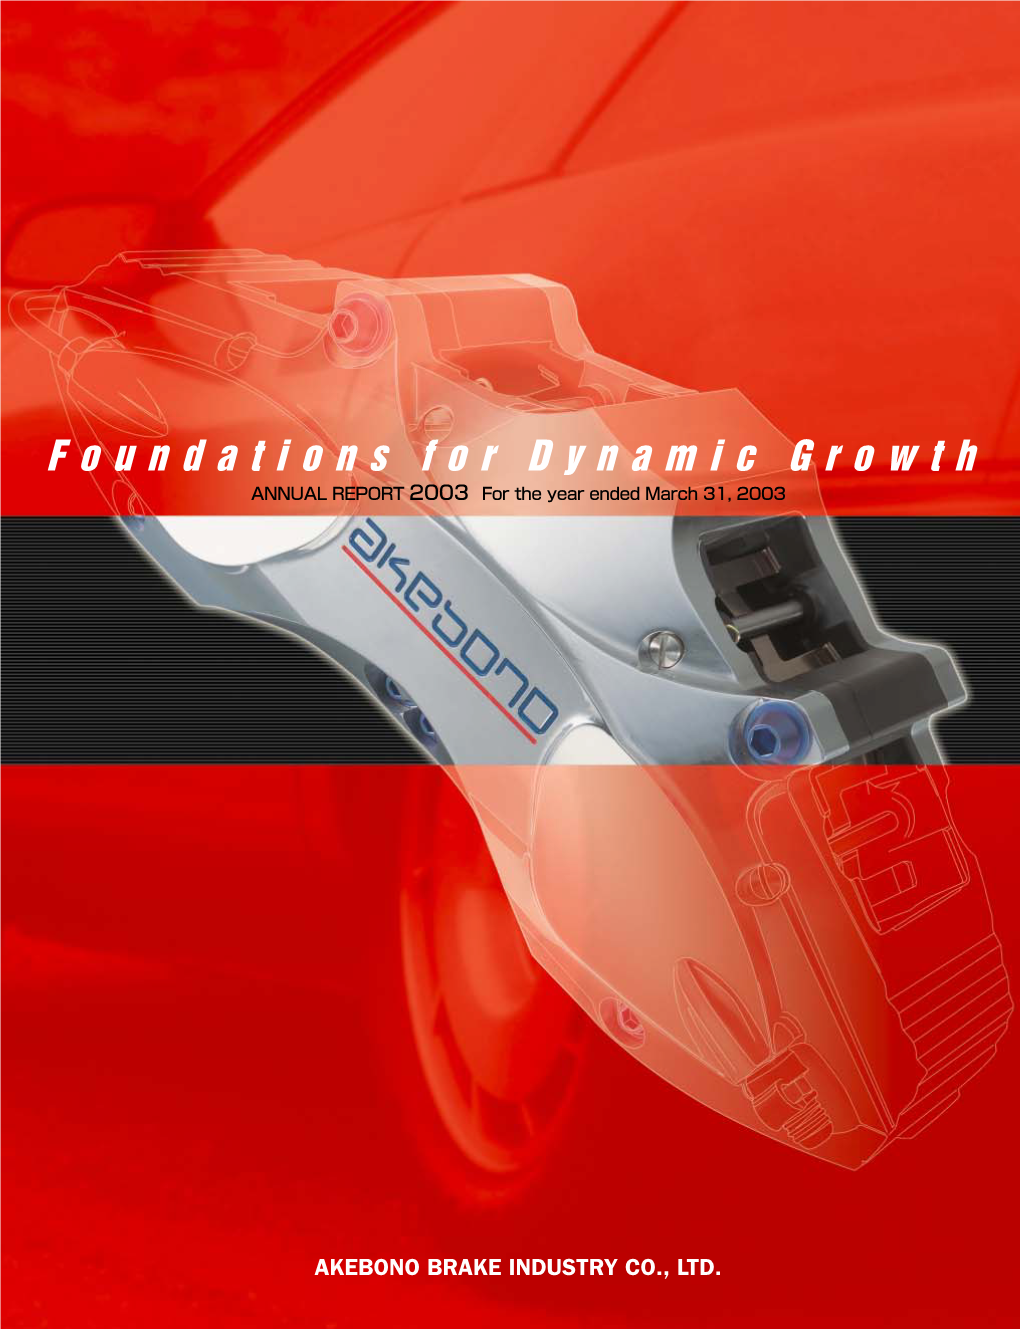 AKEBONO BRAKE INDUSTRY CO., LTD. Profile Akebono Brake Industry Co., Ltd